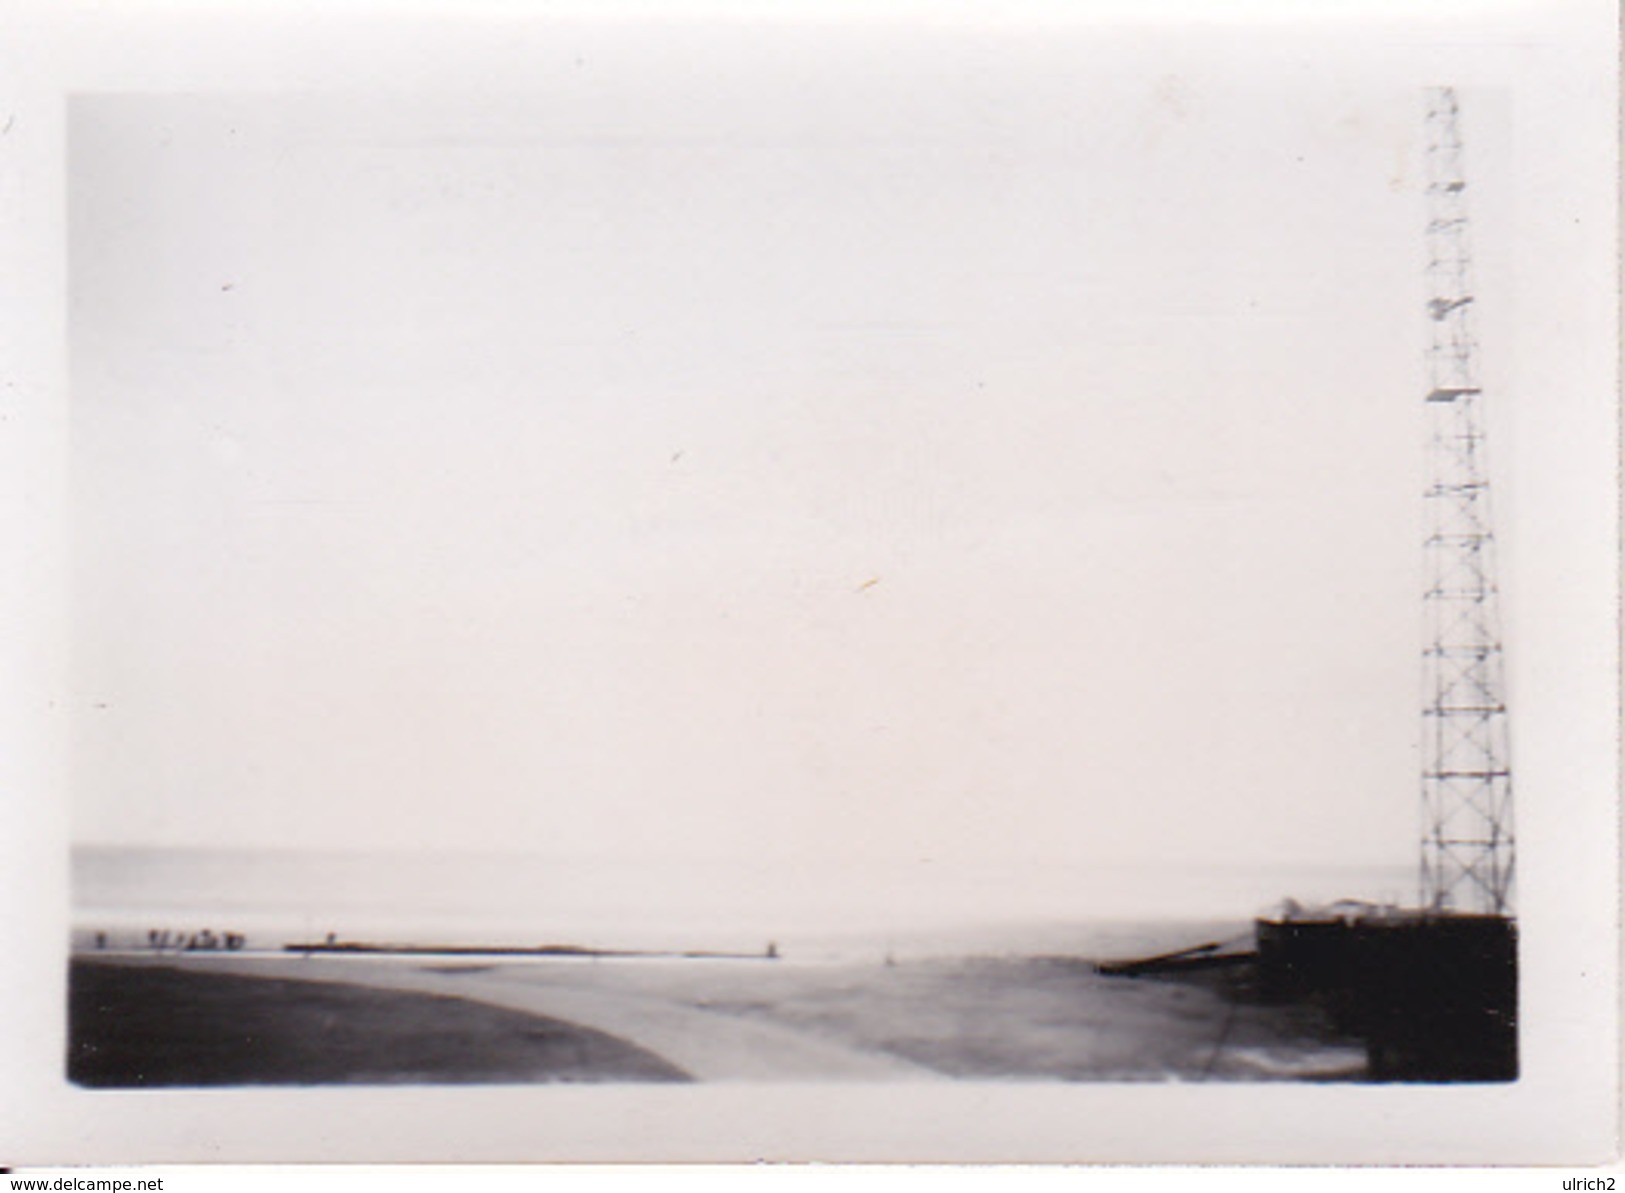 Foto Dieppe - Küste Links Von Der Hafeneinfahrt - Ca. 1940 - 8*5cm  (26647) - Orte